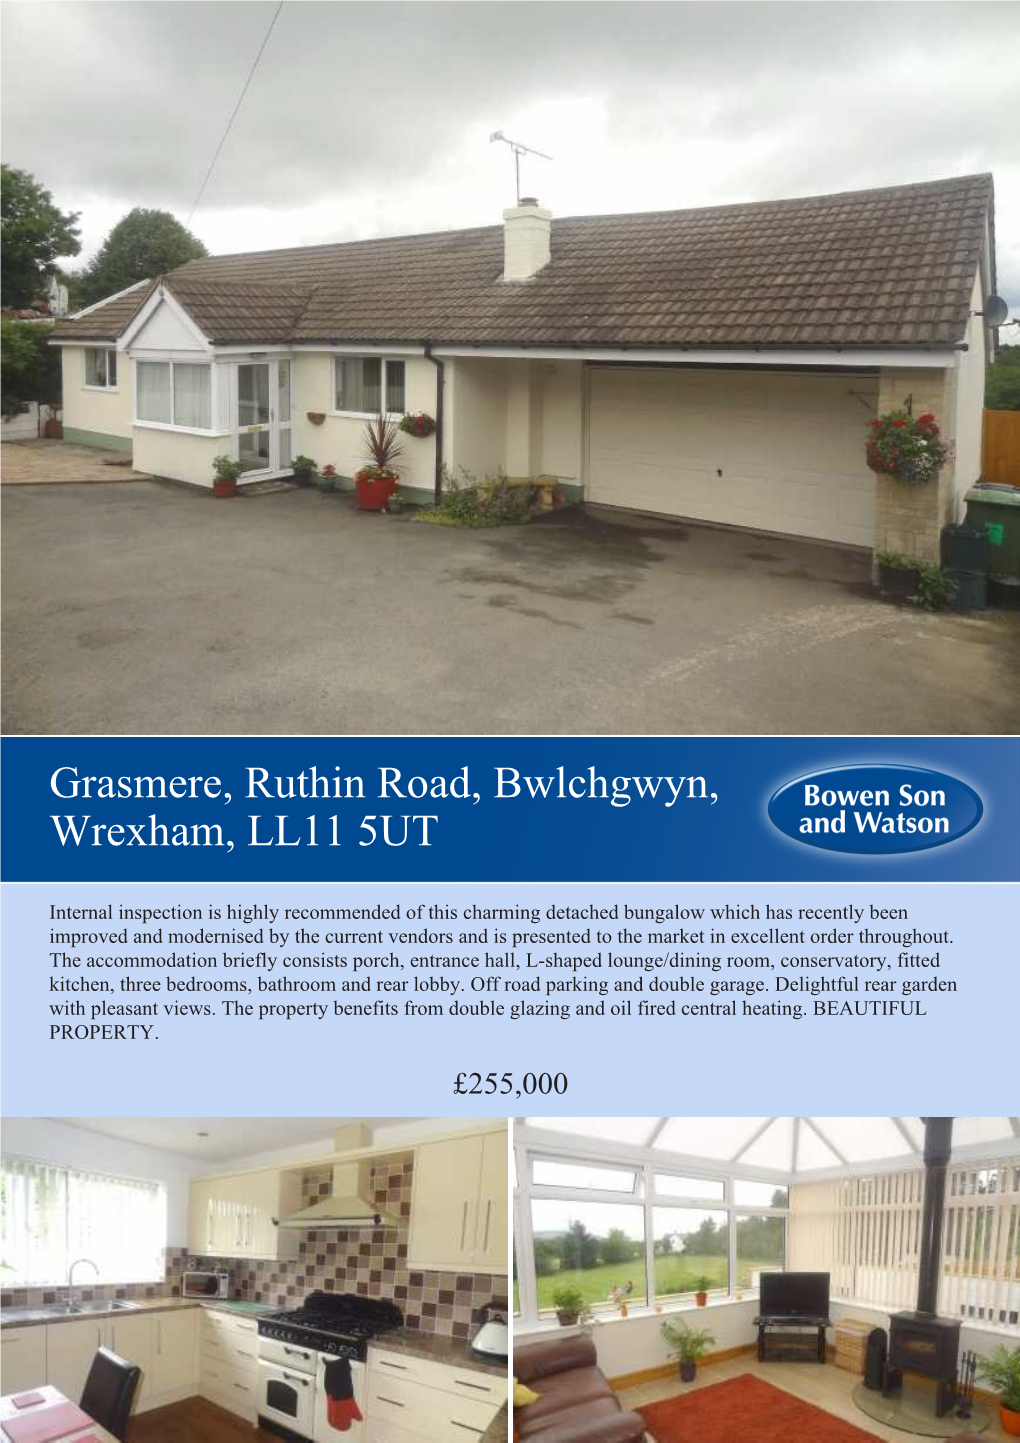 Grasmere, Ruthin Road, Bwlchgwyn, Wrexham, LL11 5UT